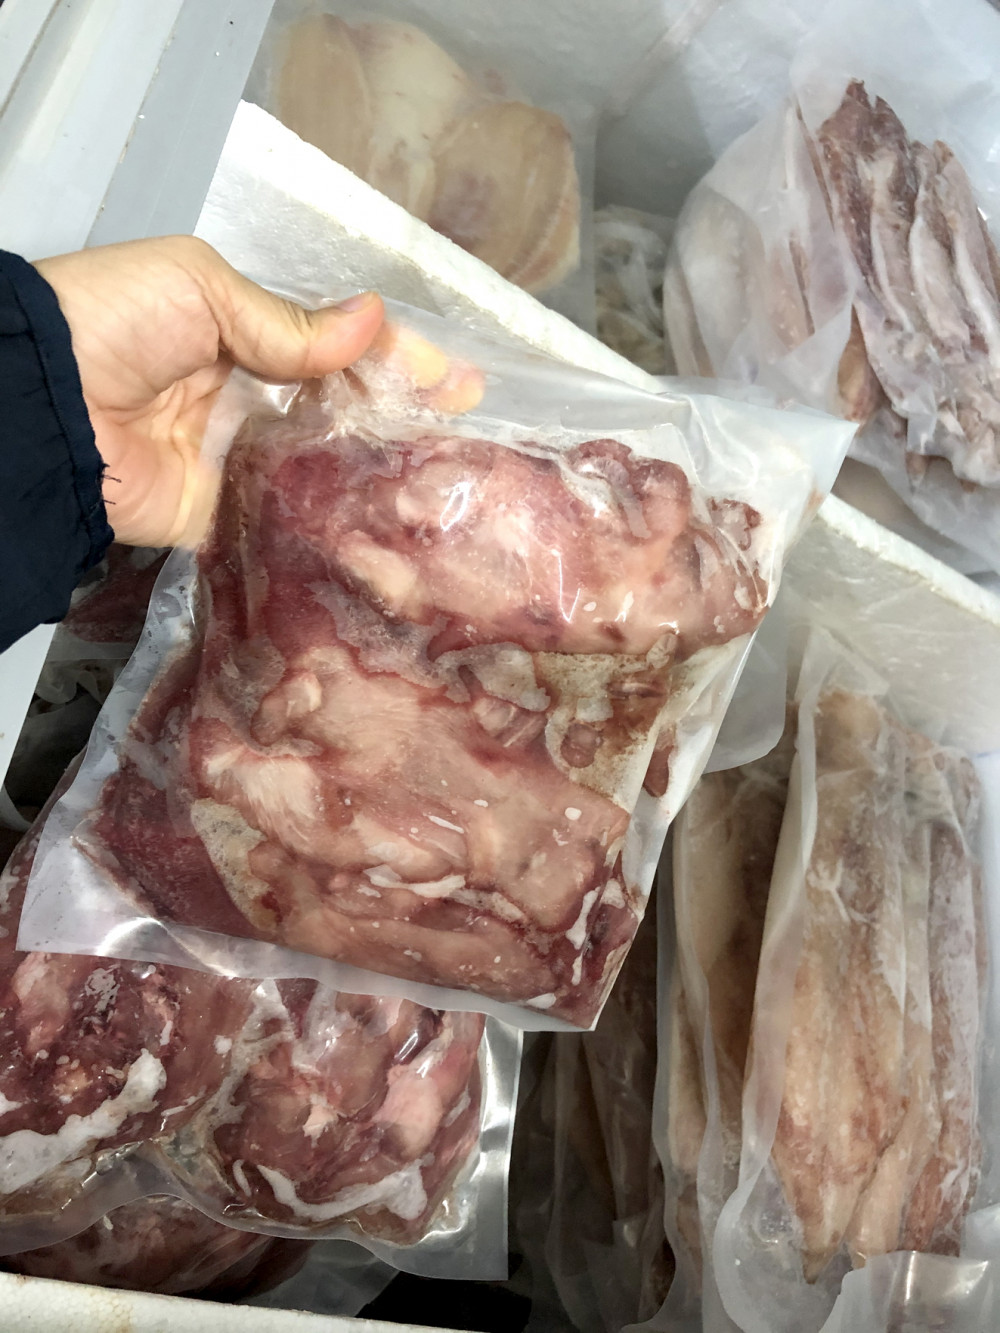 Sản phẩm thịt chuột đồng không có nhãn mác được bán tại một cửa hàng ở Q.Gò Vấp, TP.HCM